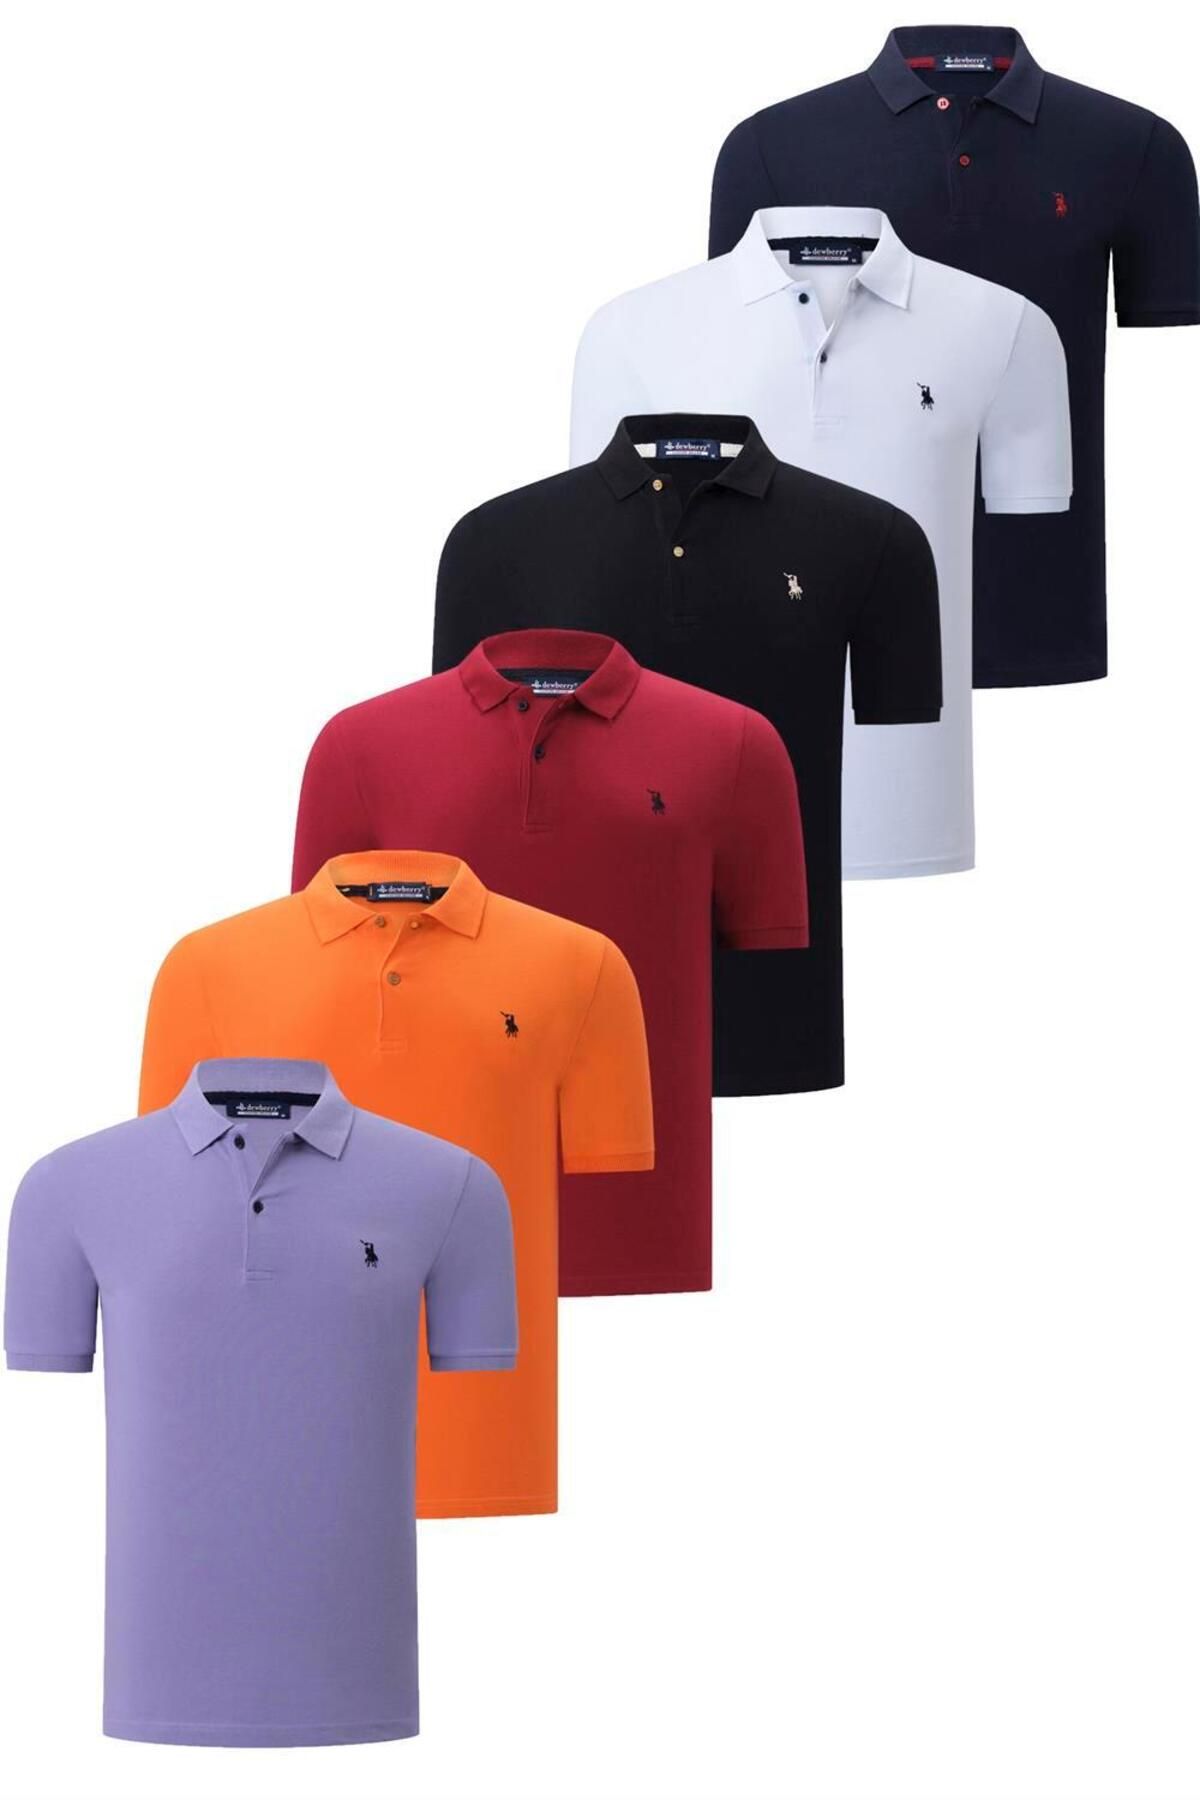 Dewberry ست شش تایی تی شرت مردانه دوبری T8561-مشکی-سفید-آبی تیره-کلار-نارنجی-لیلا